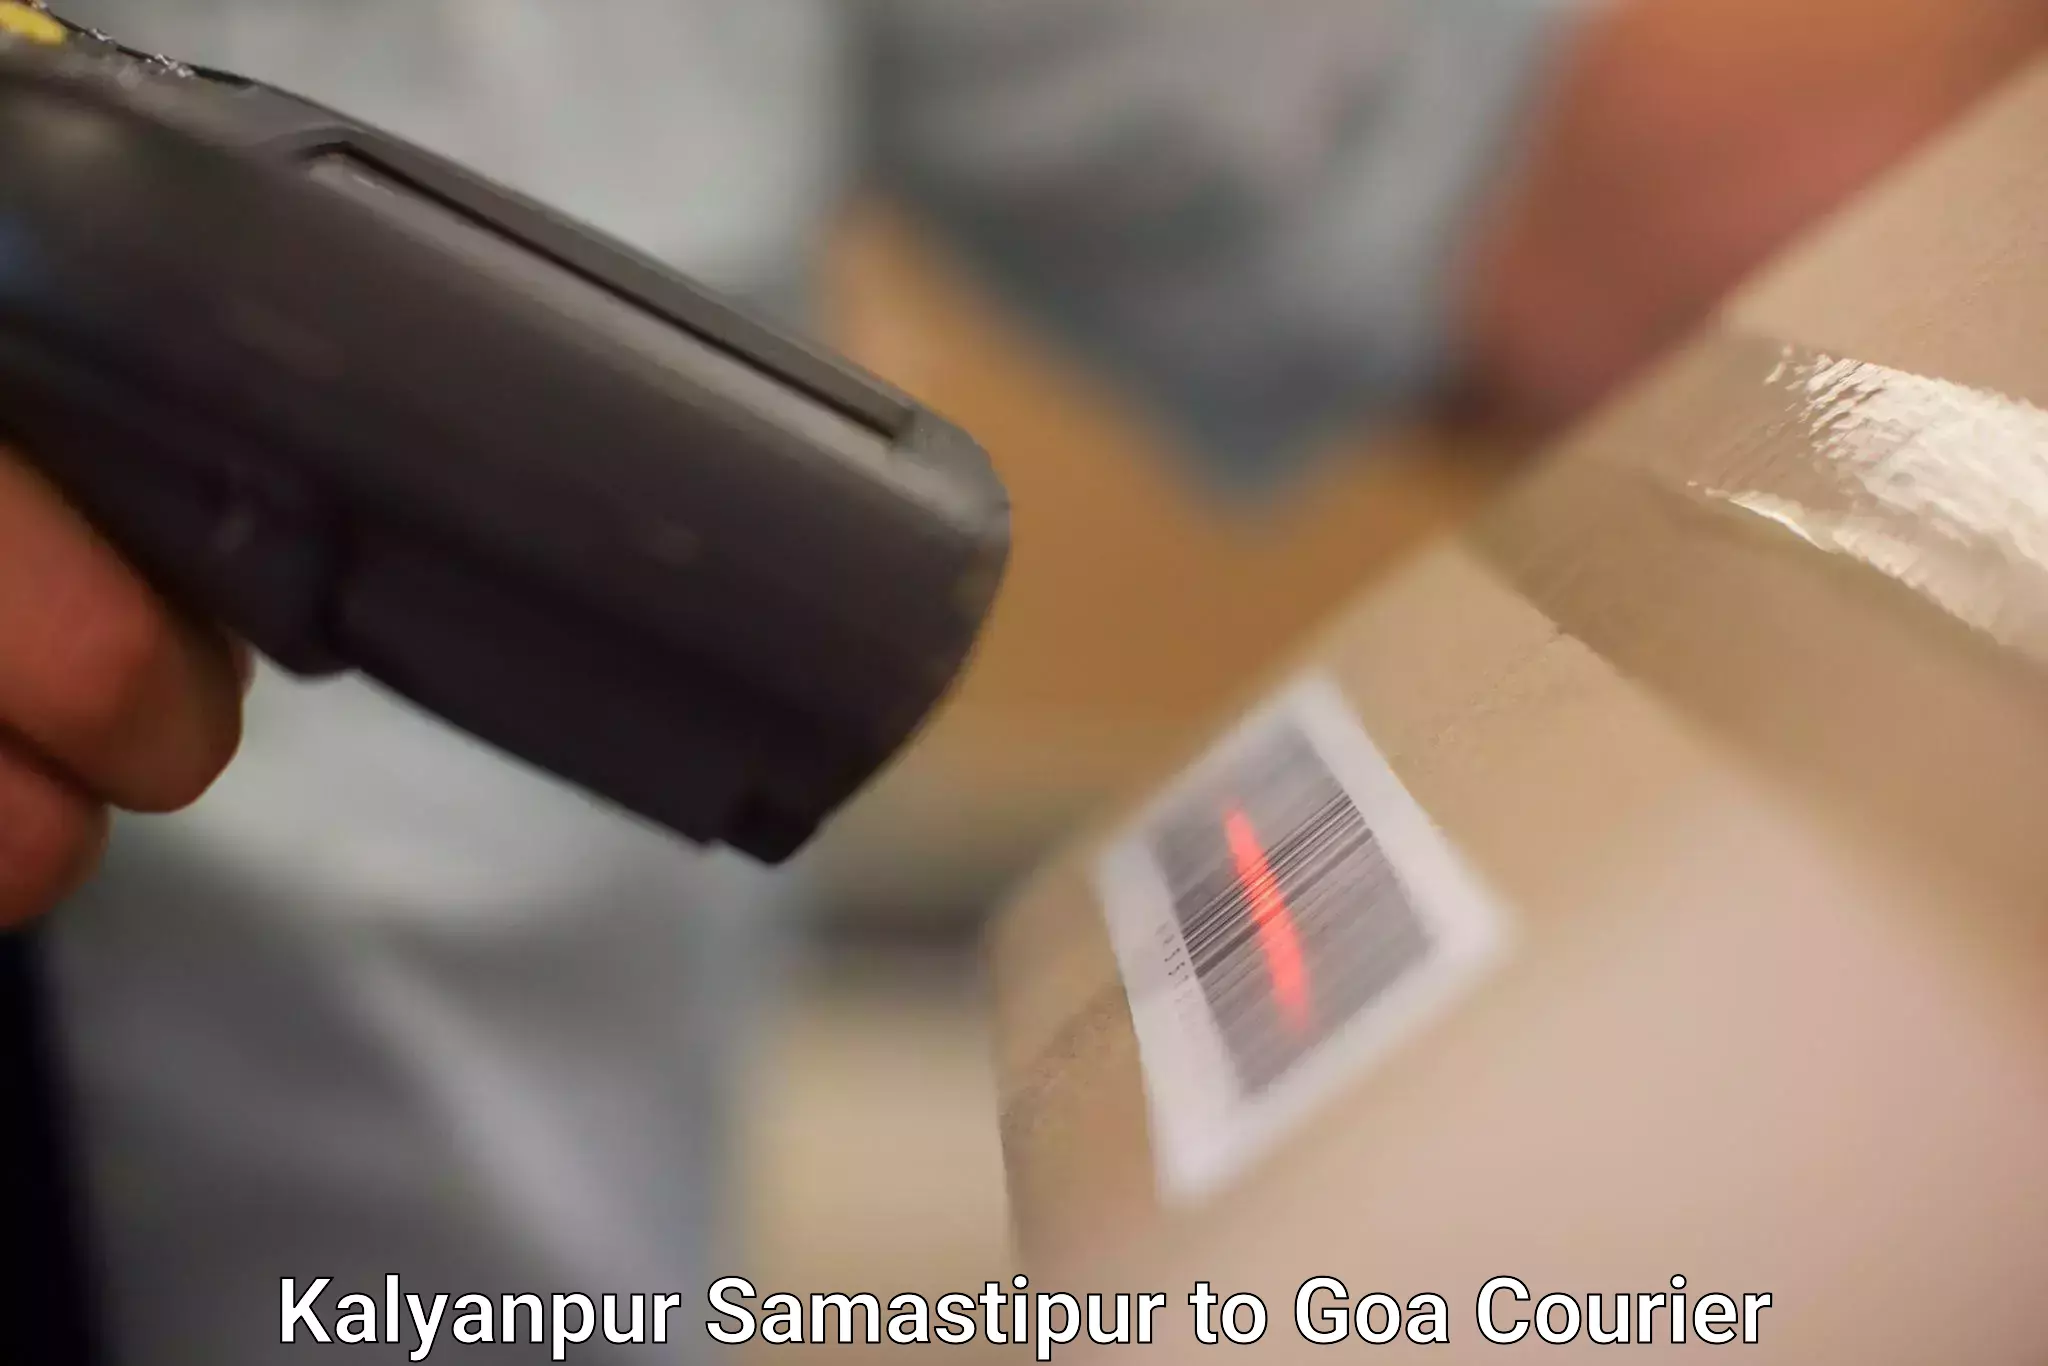 Efficient parcel service Kalyanpur Samastipur to IIT Goa